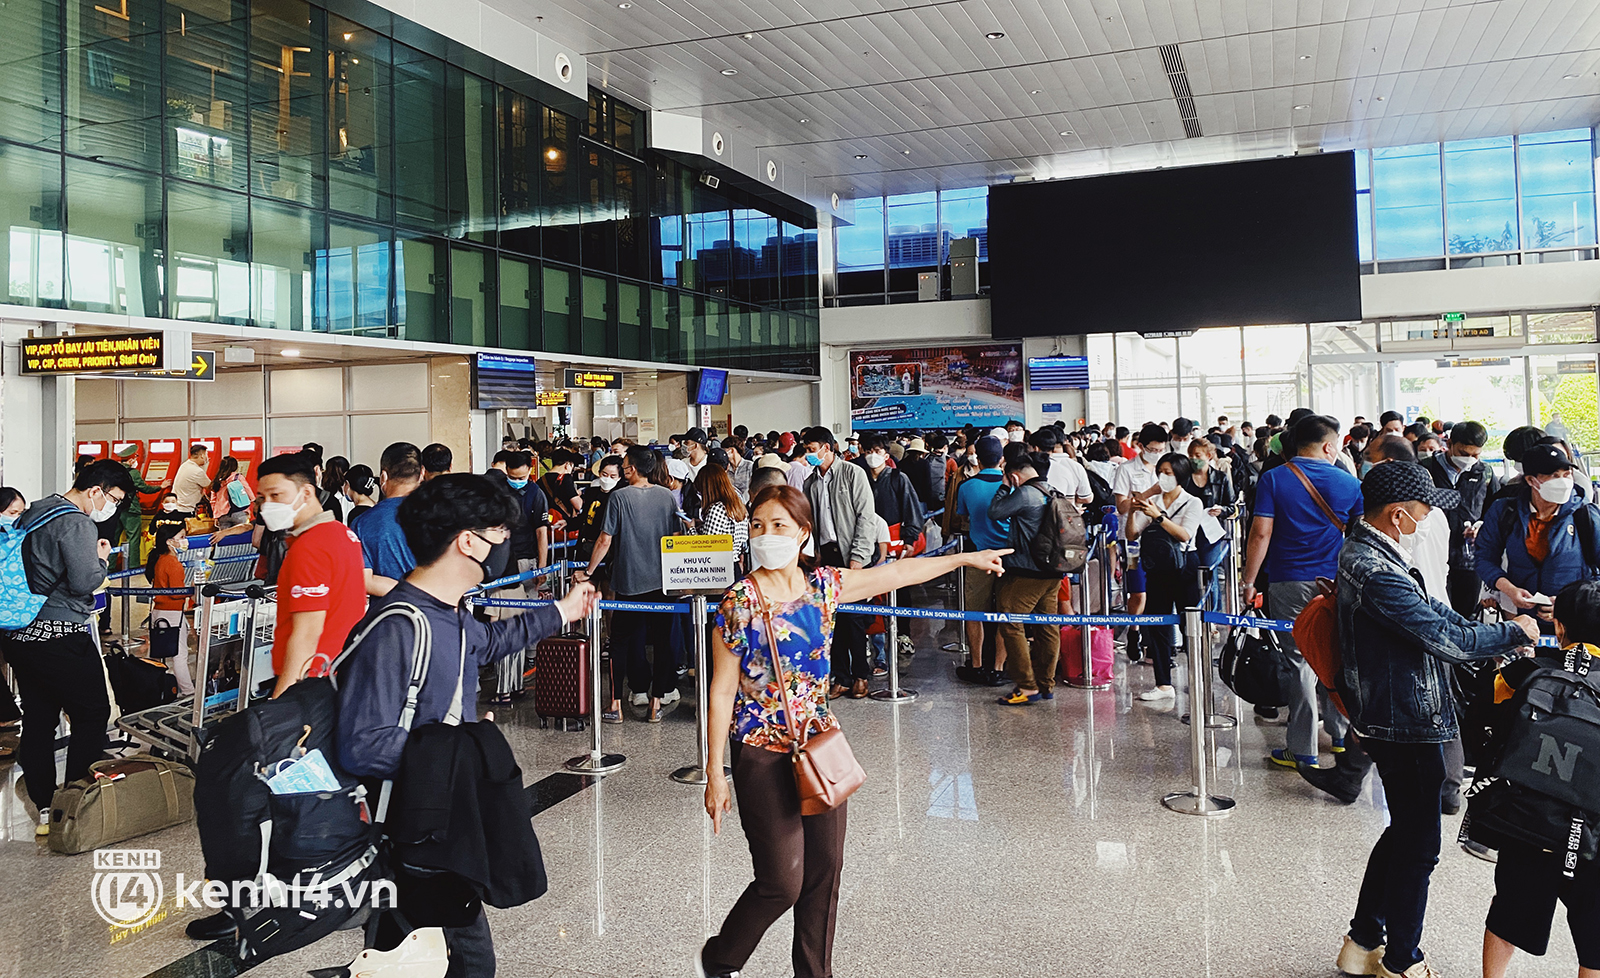 Ảnh: Sân bay Tân Sơn Nhất đông nghịt, nhiều người thất lạc hành lý, xếp hàng dài chờ gọi xe - Ảnh 3.